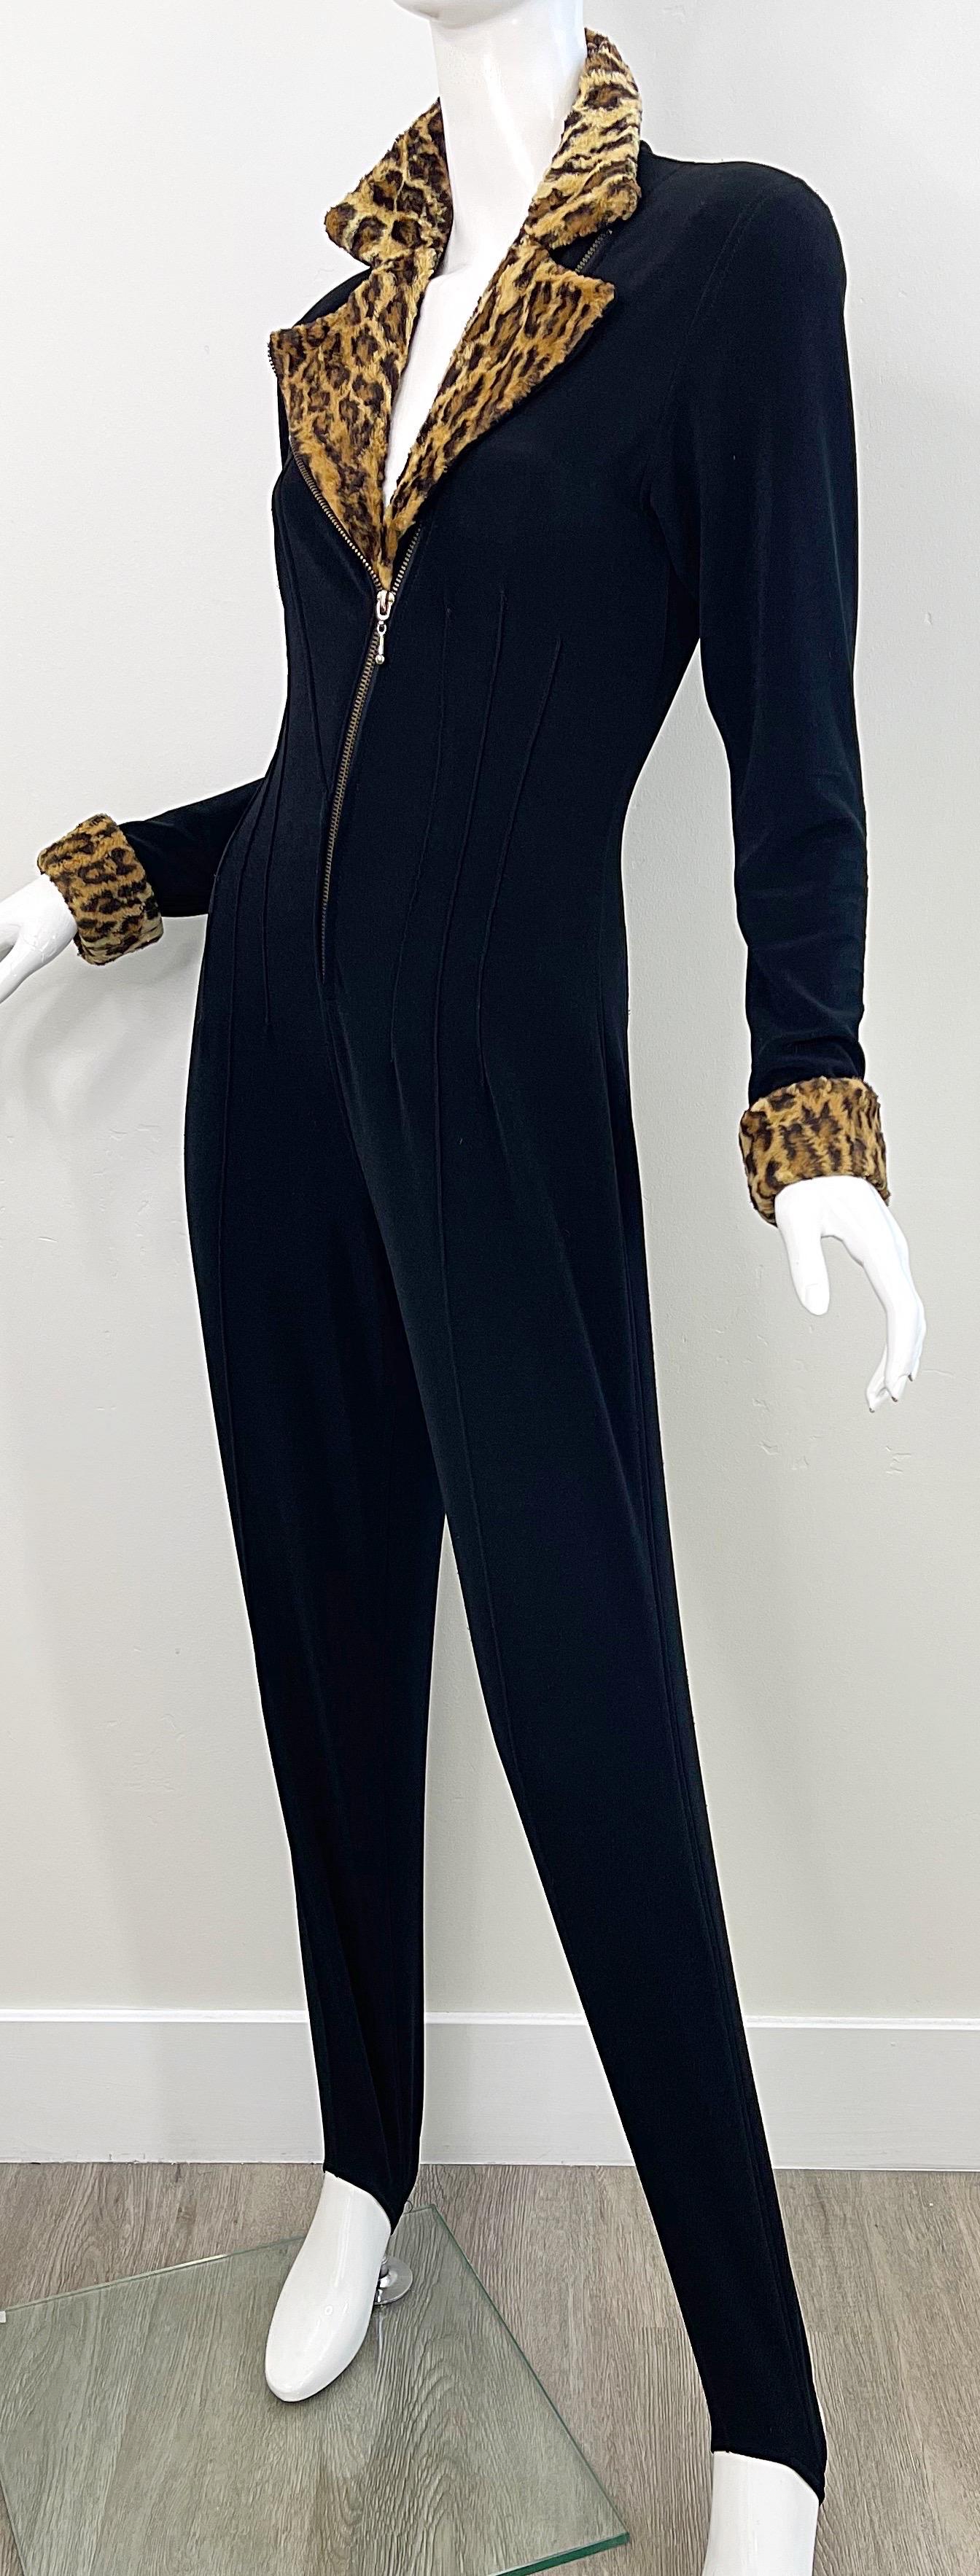 Women's 1980s Tadashi Black Faux Leopard Fur Stirrup Pants 80s Vintage Jumpsuit Cat Suit For Sale